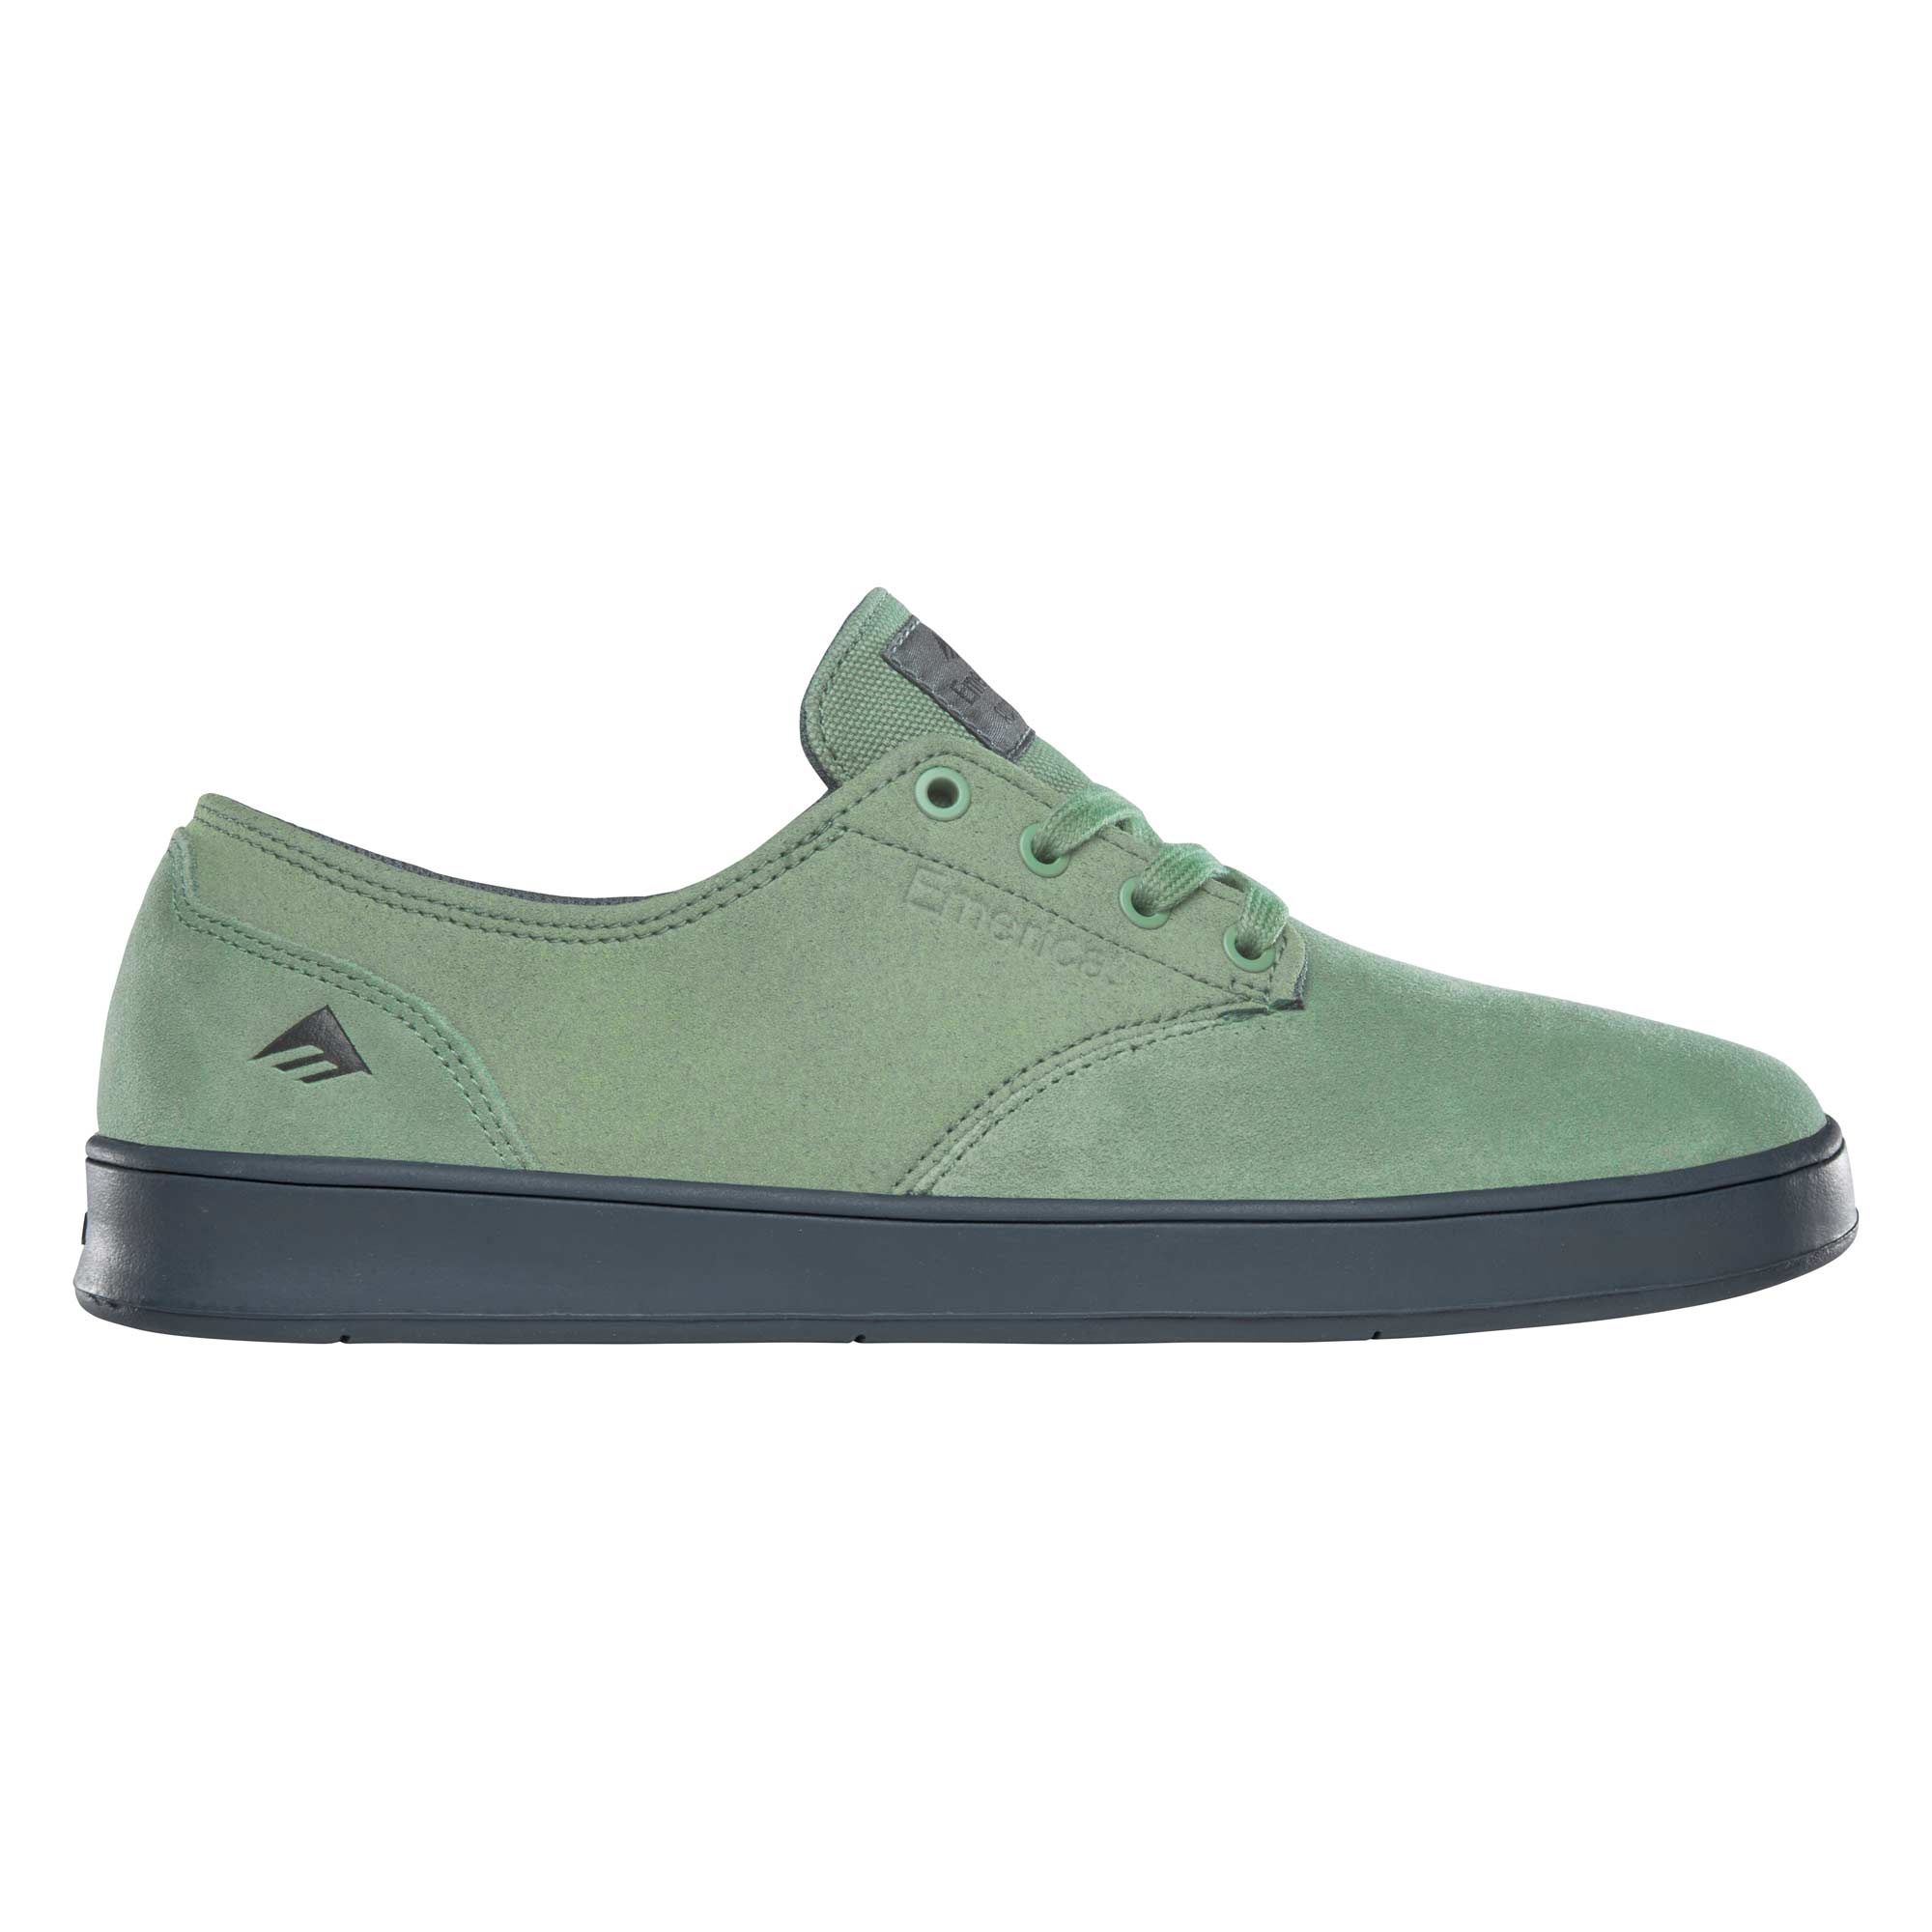 EMERICA Youths Shoe ROMERO LACED green green